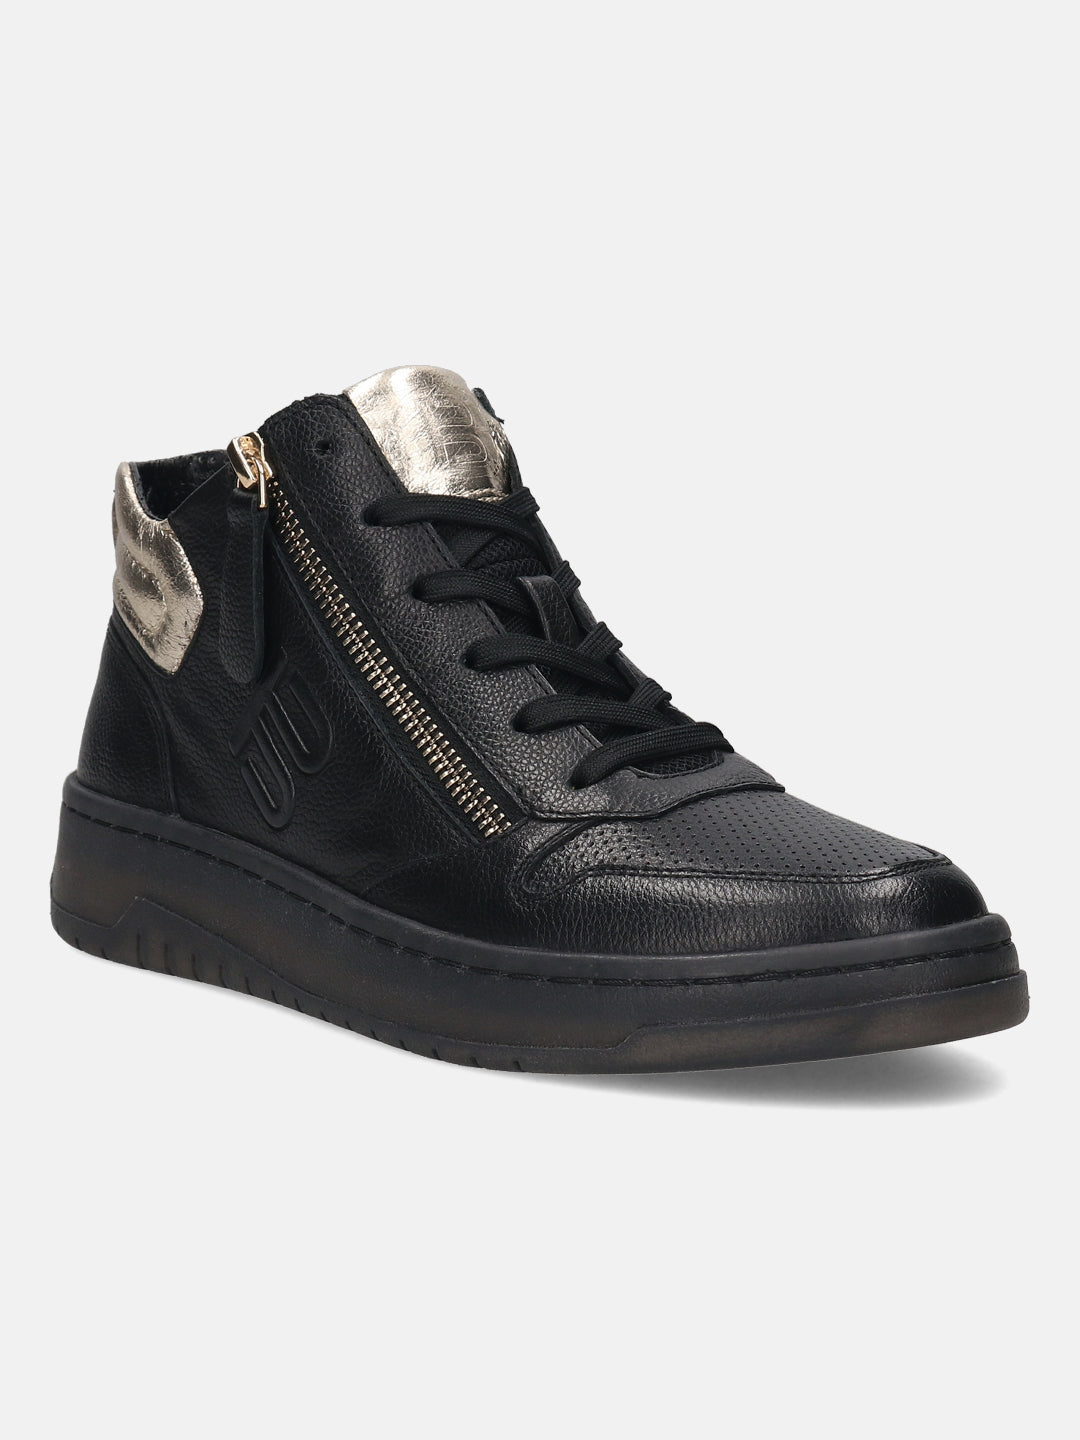 BAGATT Premium Leather Black High Top Sneakers